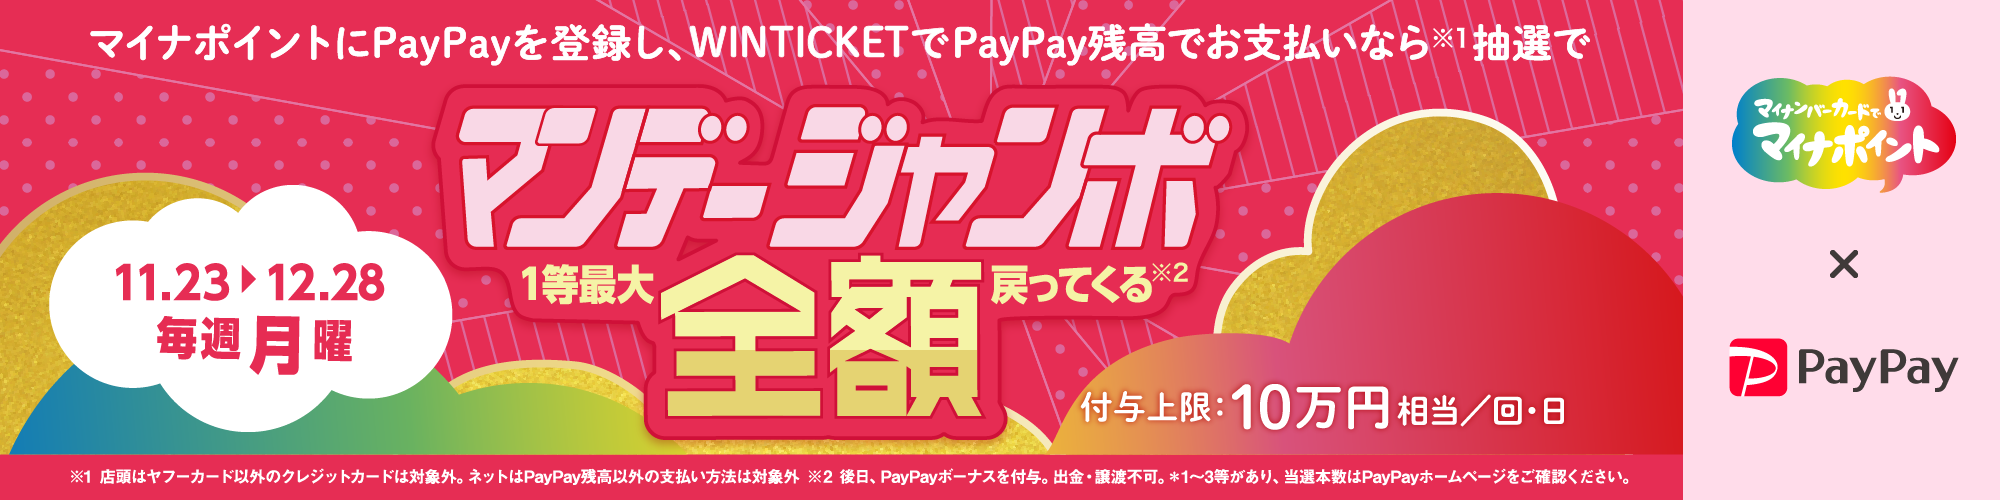 【毎週月曜はマンデージャンボ開催】PayPayマイナポイントキャンペーン